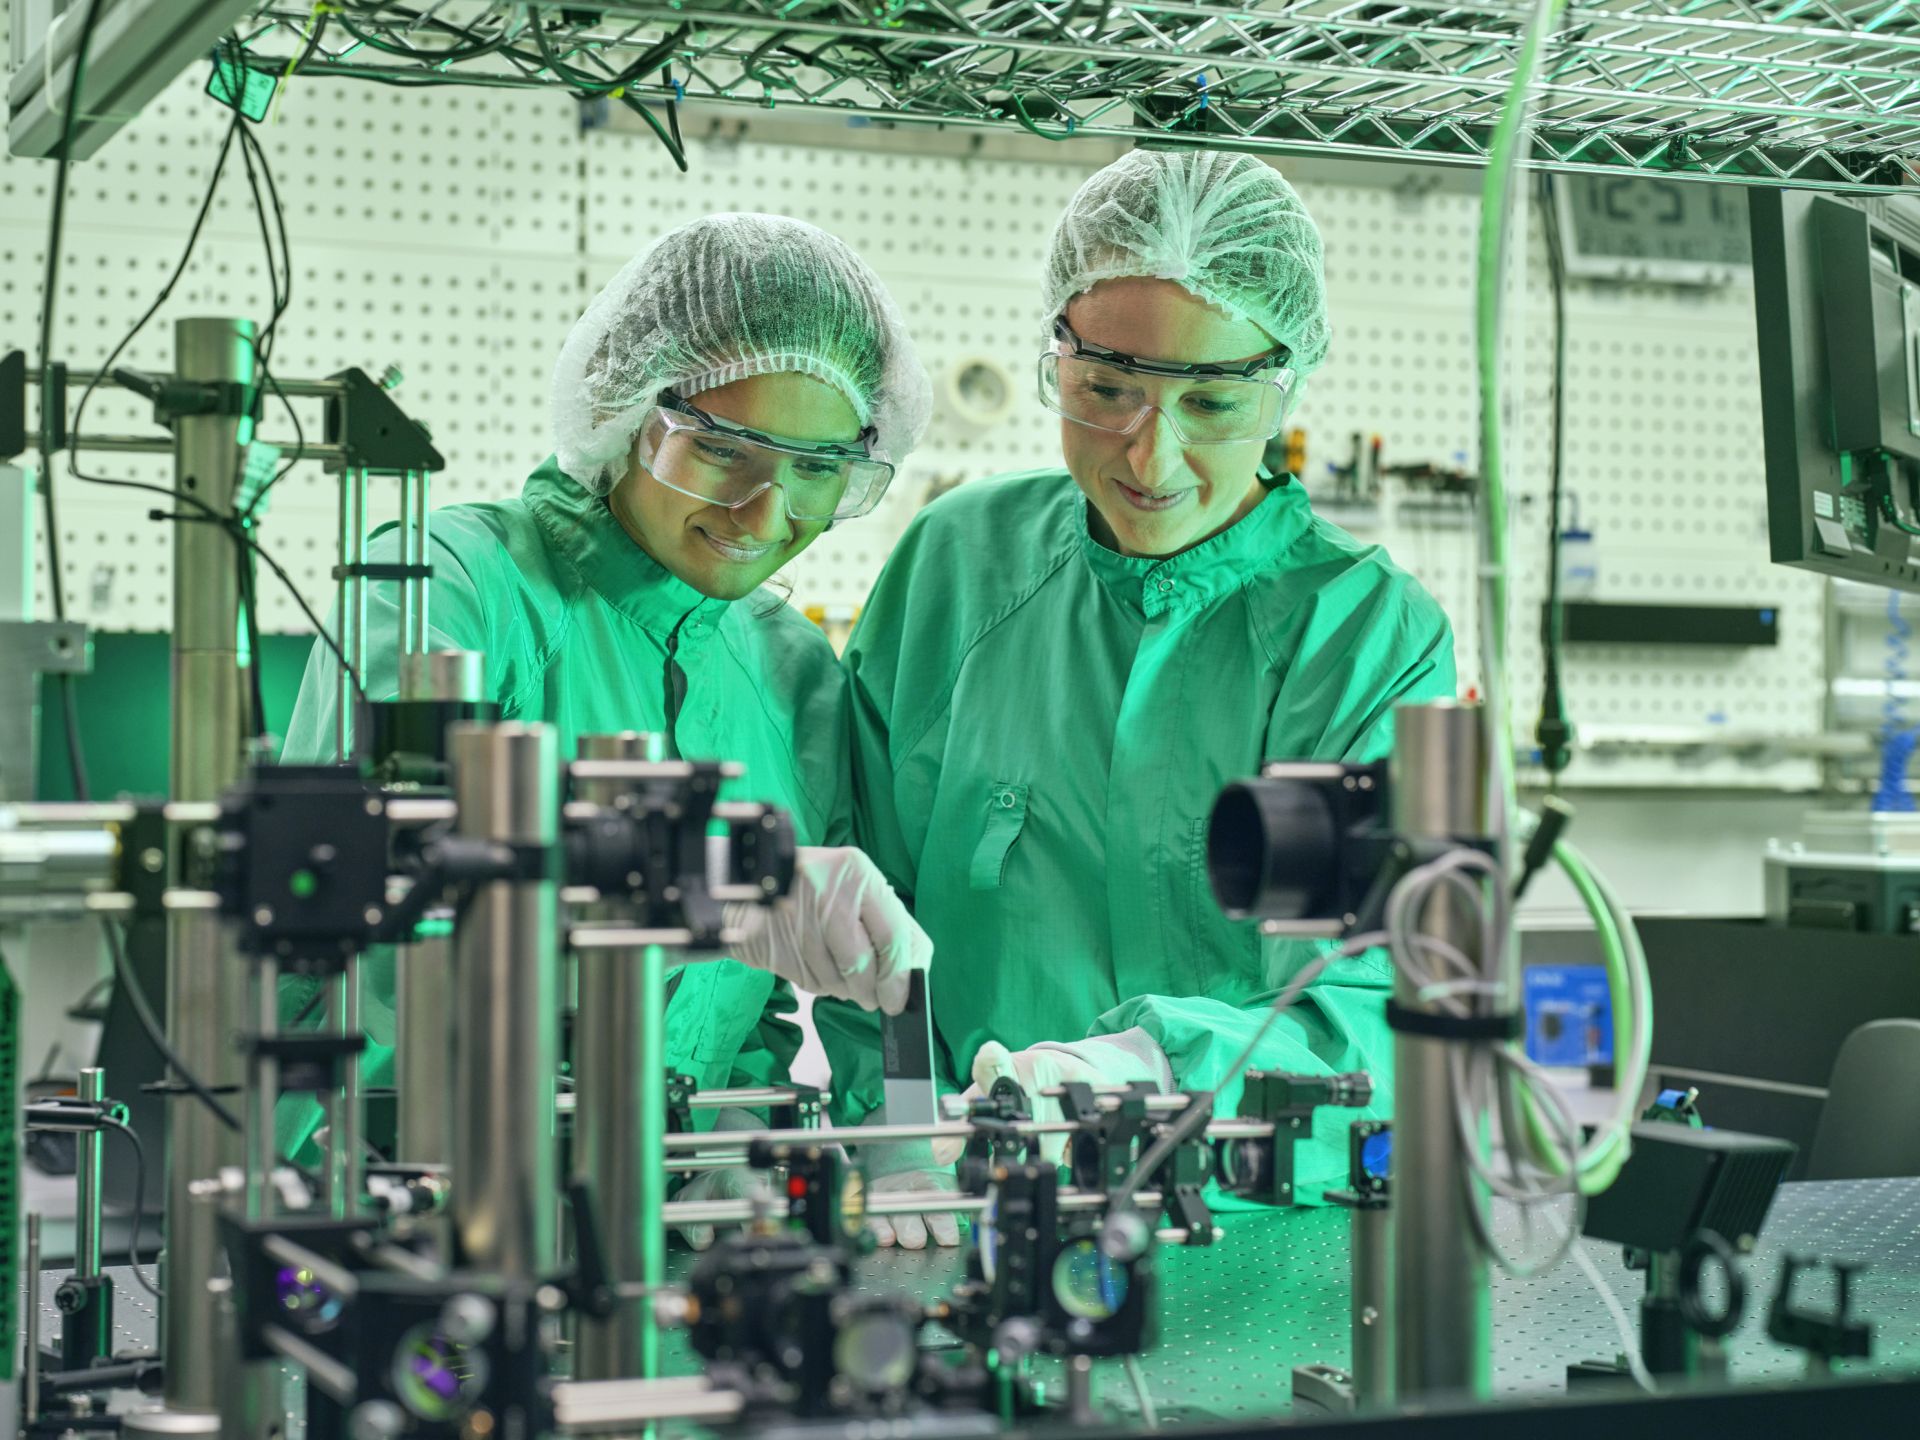 Forschende arbeiten an einem optischen Aufbau im Labor.